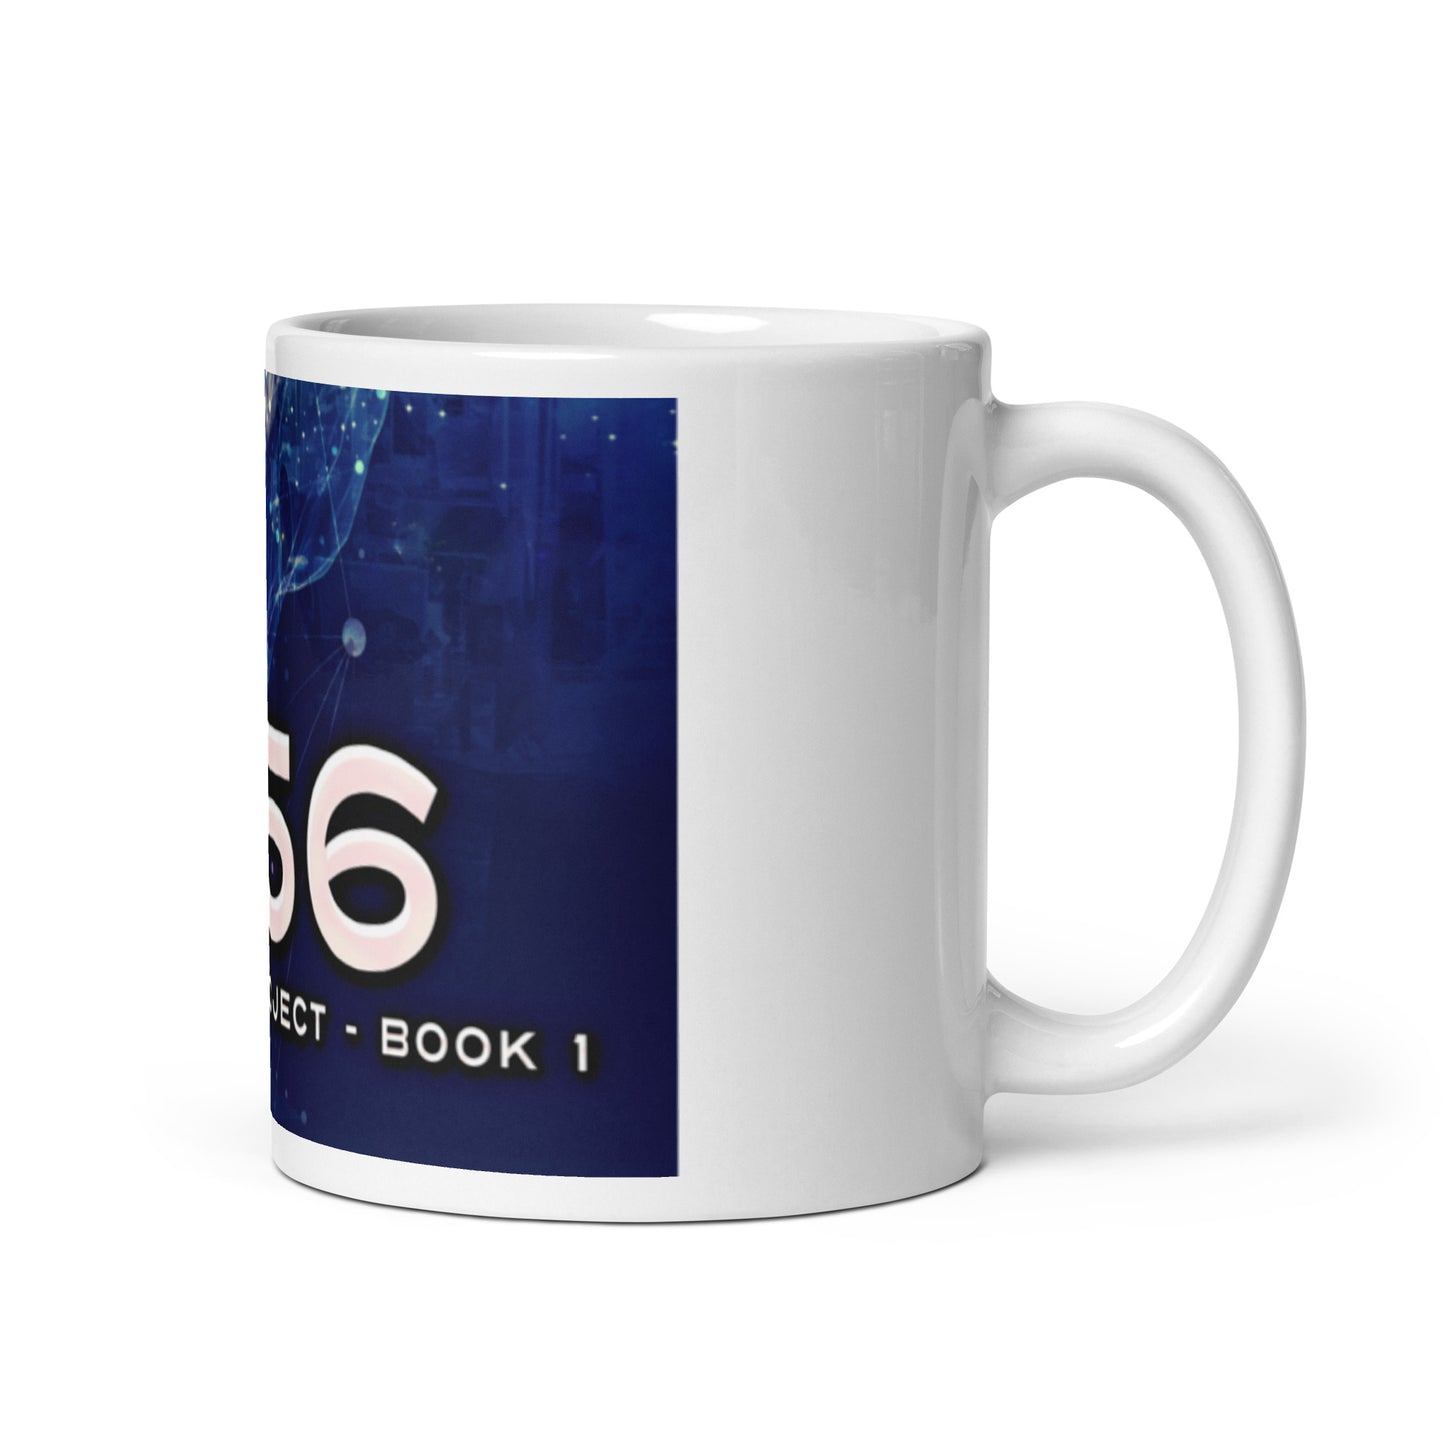 2156 - White Coffee Mug